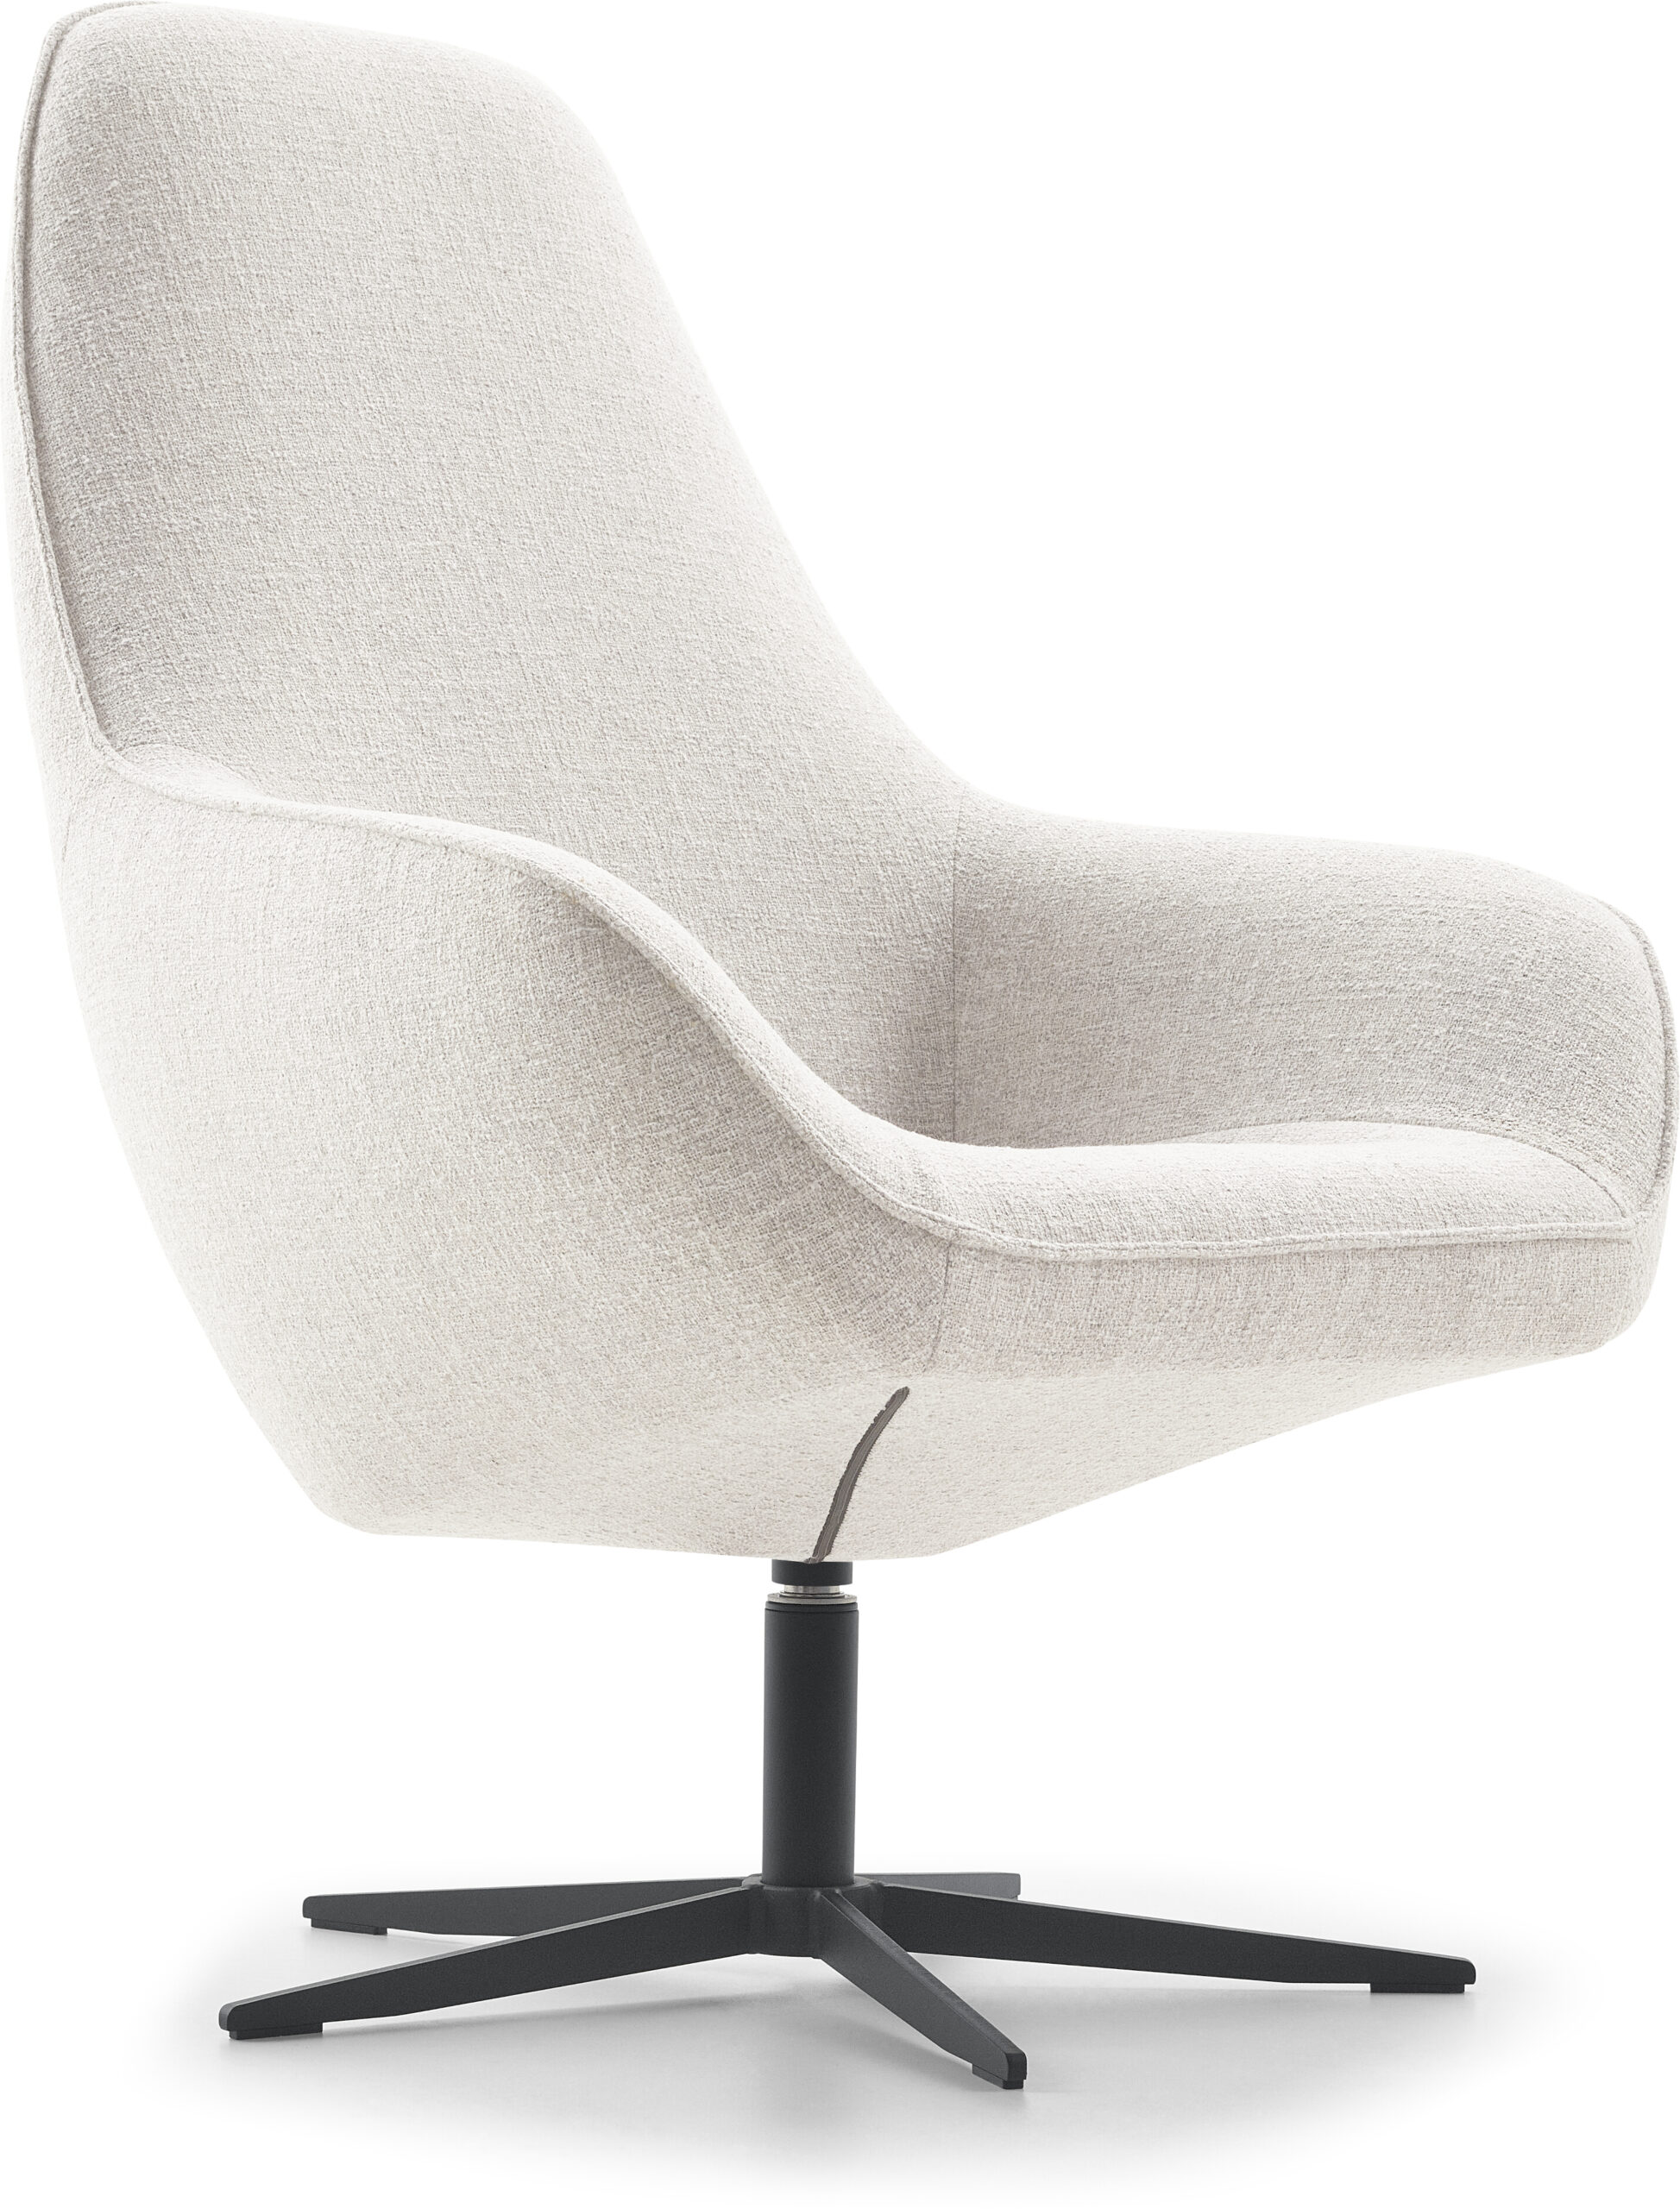 Bayview, exclusief design uit de collectie van Baenks. Bayview fauteuil Baenks uitgevoerd met hoge rug in stof oasis 196-shell (cat. S) met zwarte metalen stervoet (type A). Afmetingen: H109 x B80 x D85 cm